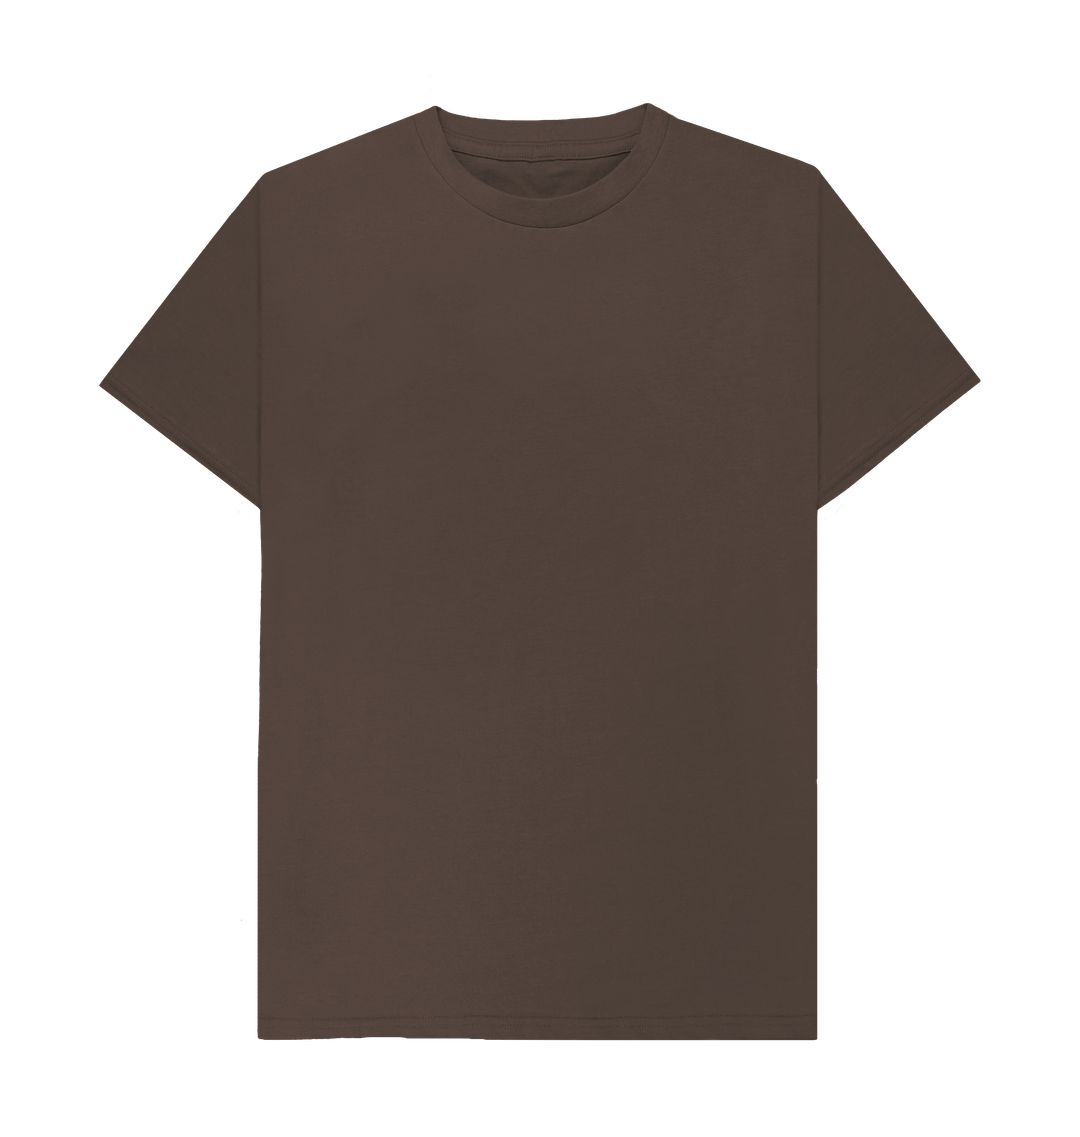 Best Plain 100% Cotton T-Shirt for Men UK